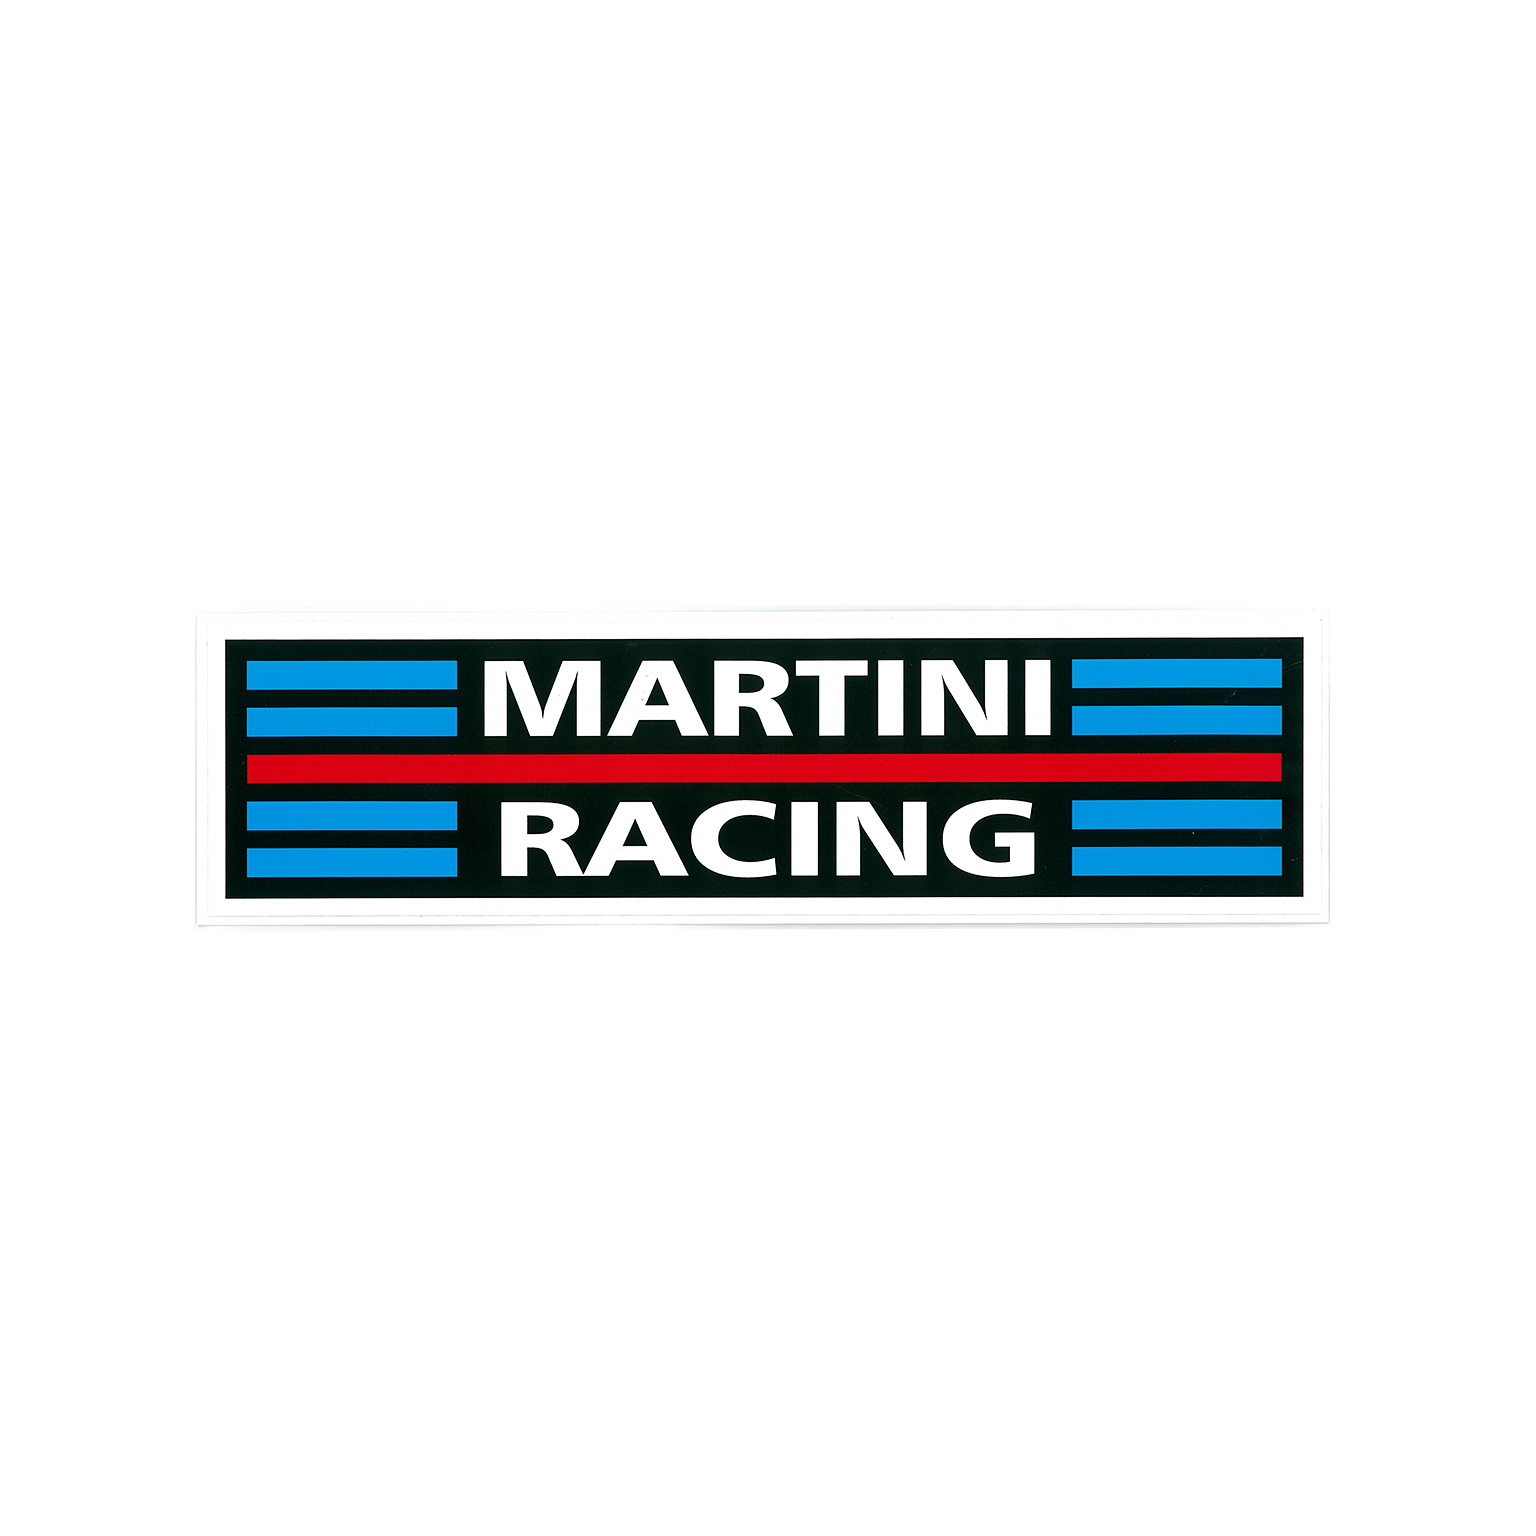 MARTINI RACING ステッカーイメージ0